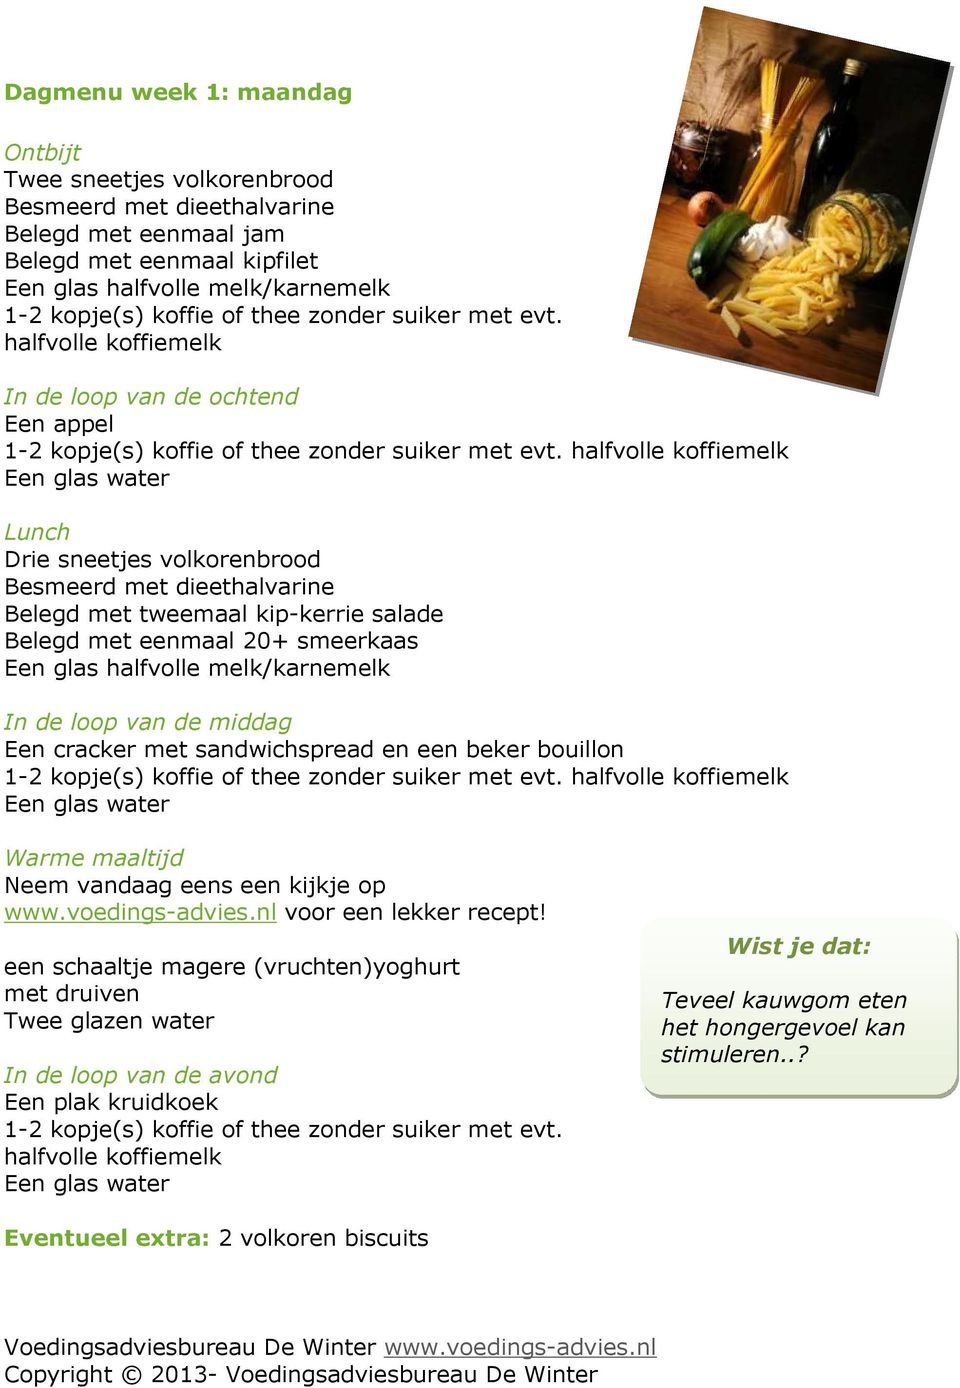 Neem vandaag eens een kijkje op www.voedings-advies.nl voor een lekker recept!